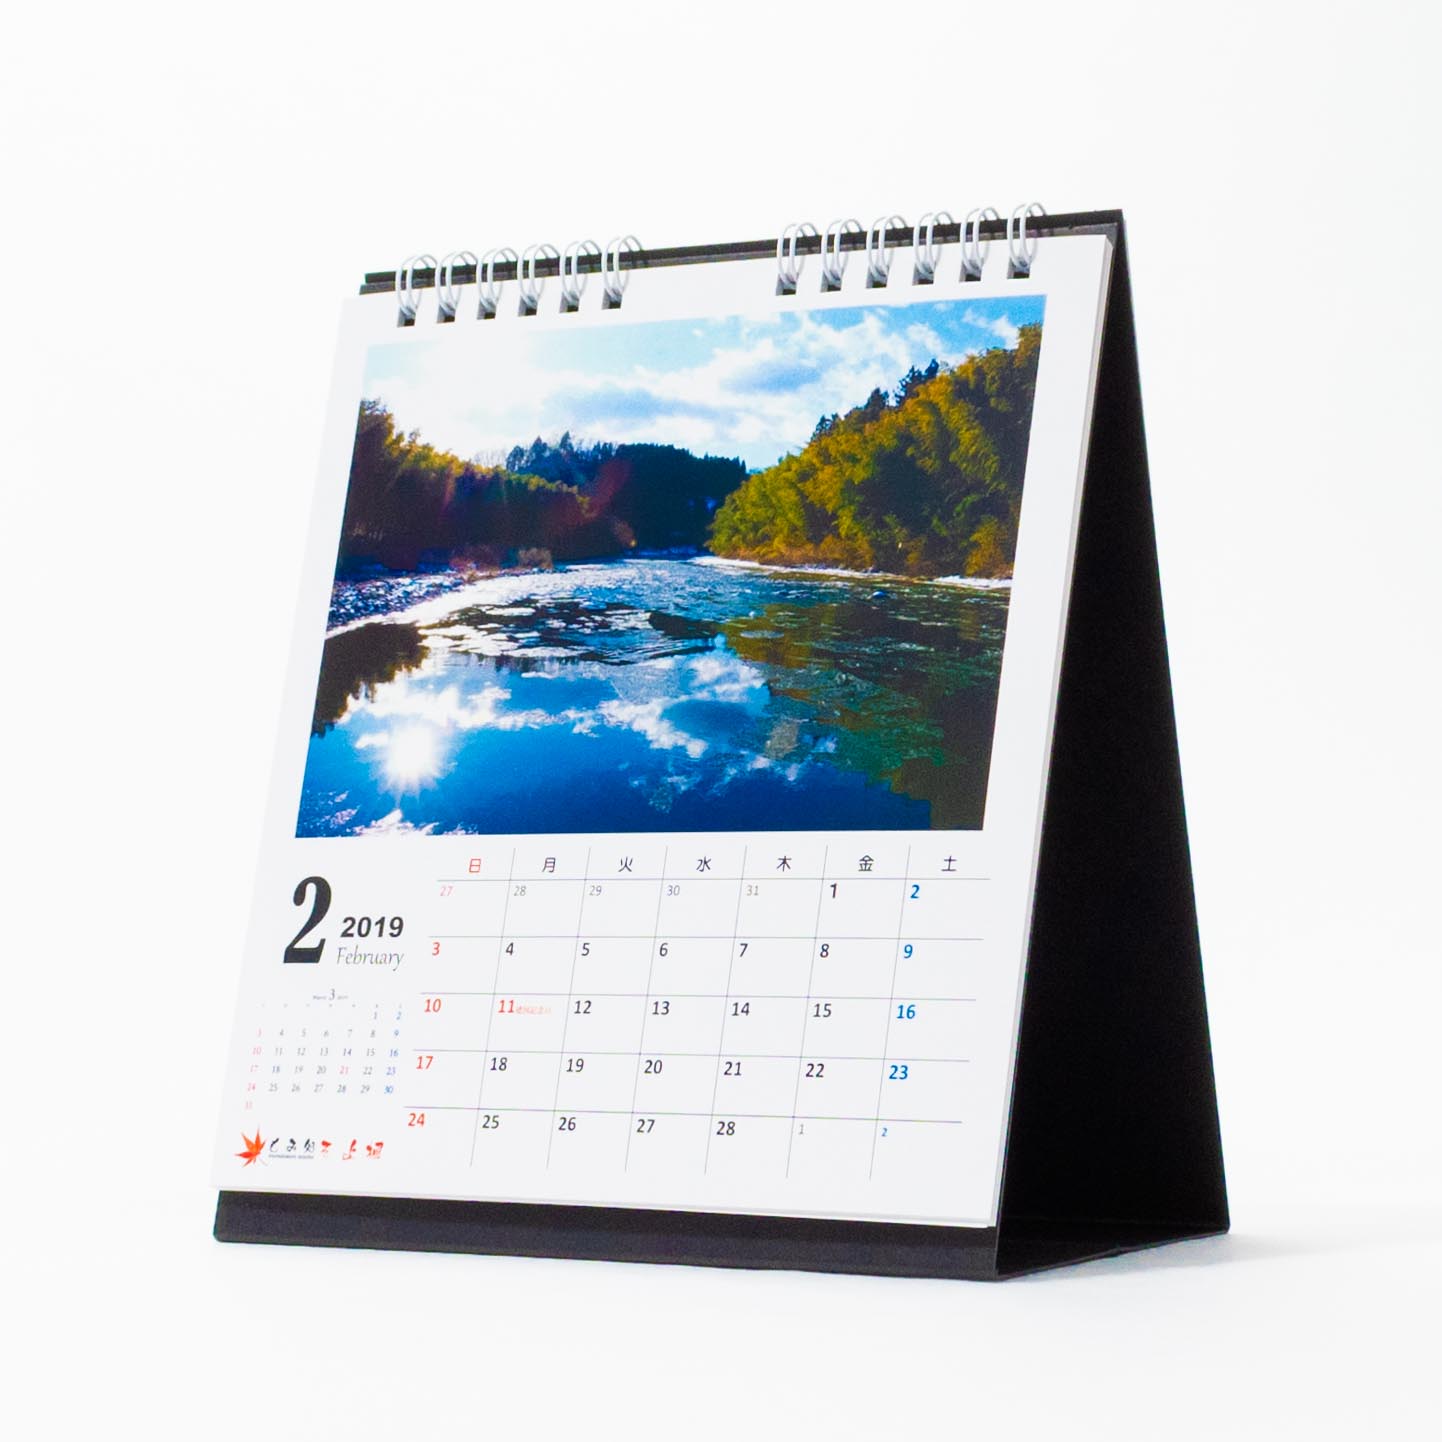 「石川  依里 様」製作のオリジナルカレンダー ギャラリー写真1